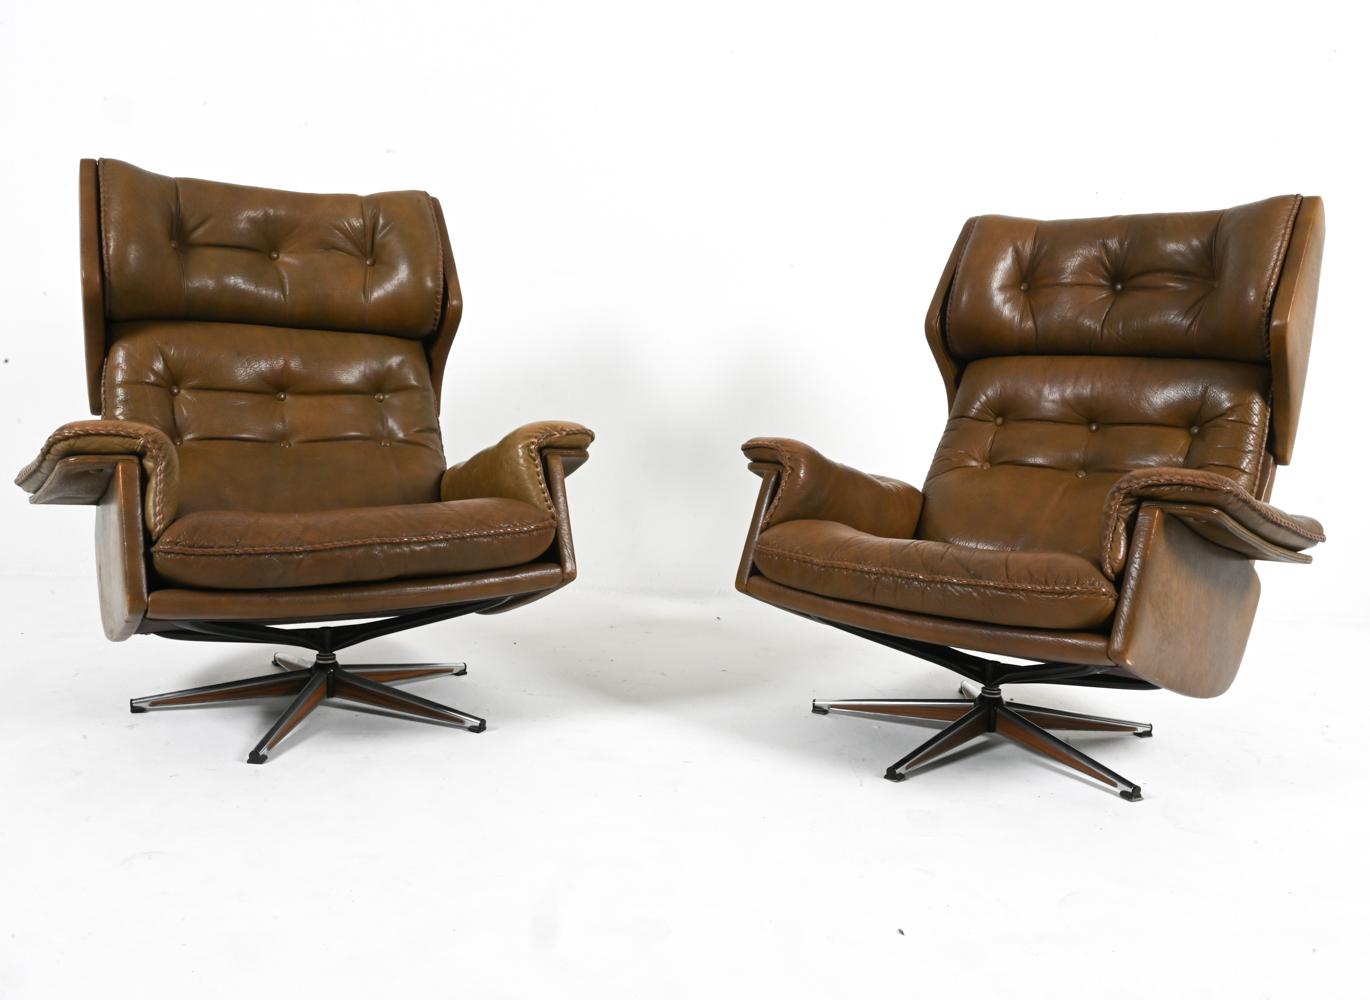 Plongez dans le confort et le style scandinaves avec cette paire exquise de fauteuils pivotants du célèbre designer suédois Arne Norells. Fabriquées en cuir de buffle riche et souple, ces chaises dégagent une aura d'élégance intemporelle. Les sièges